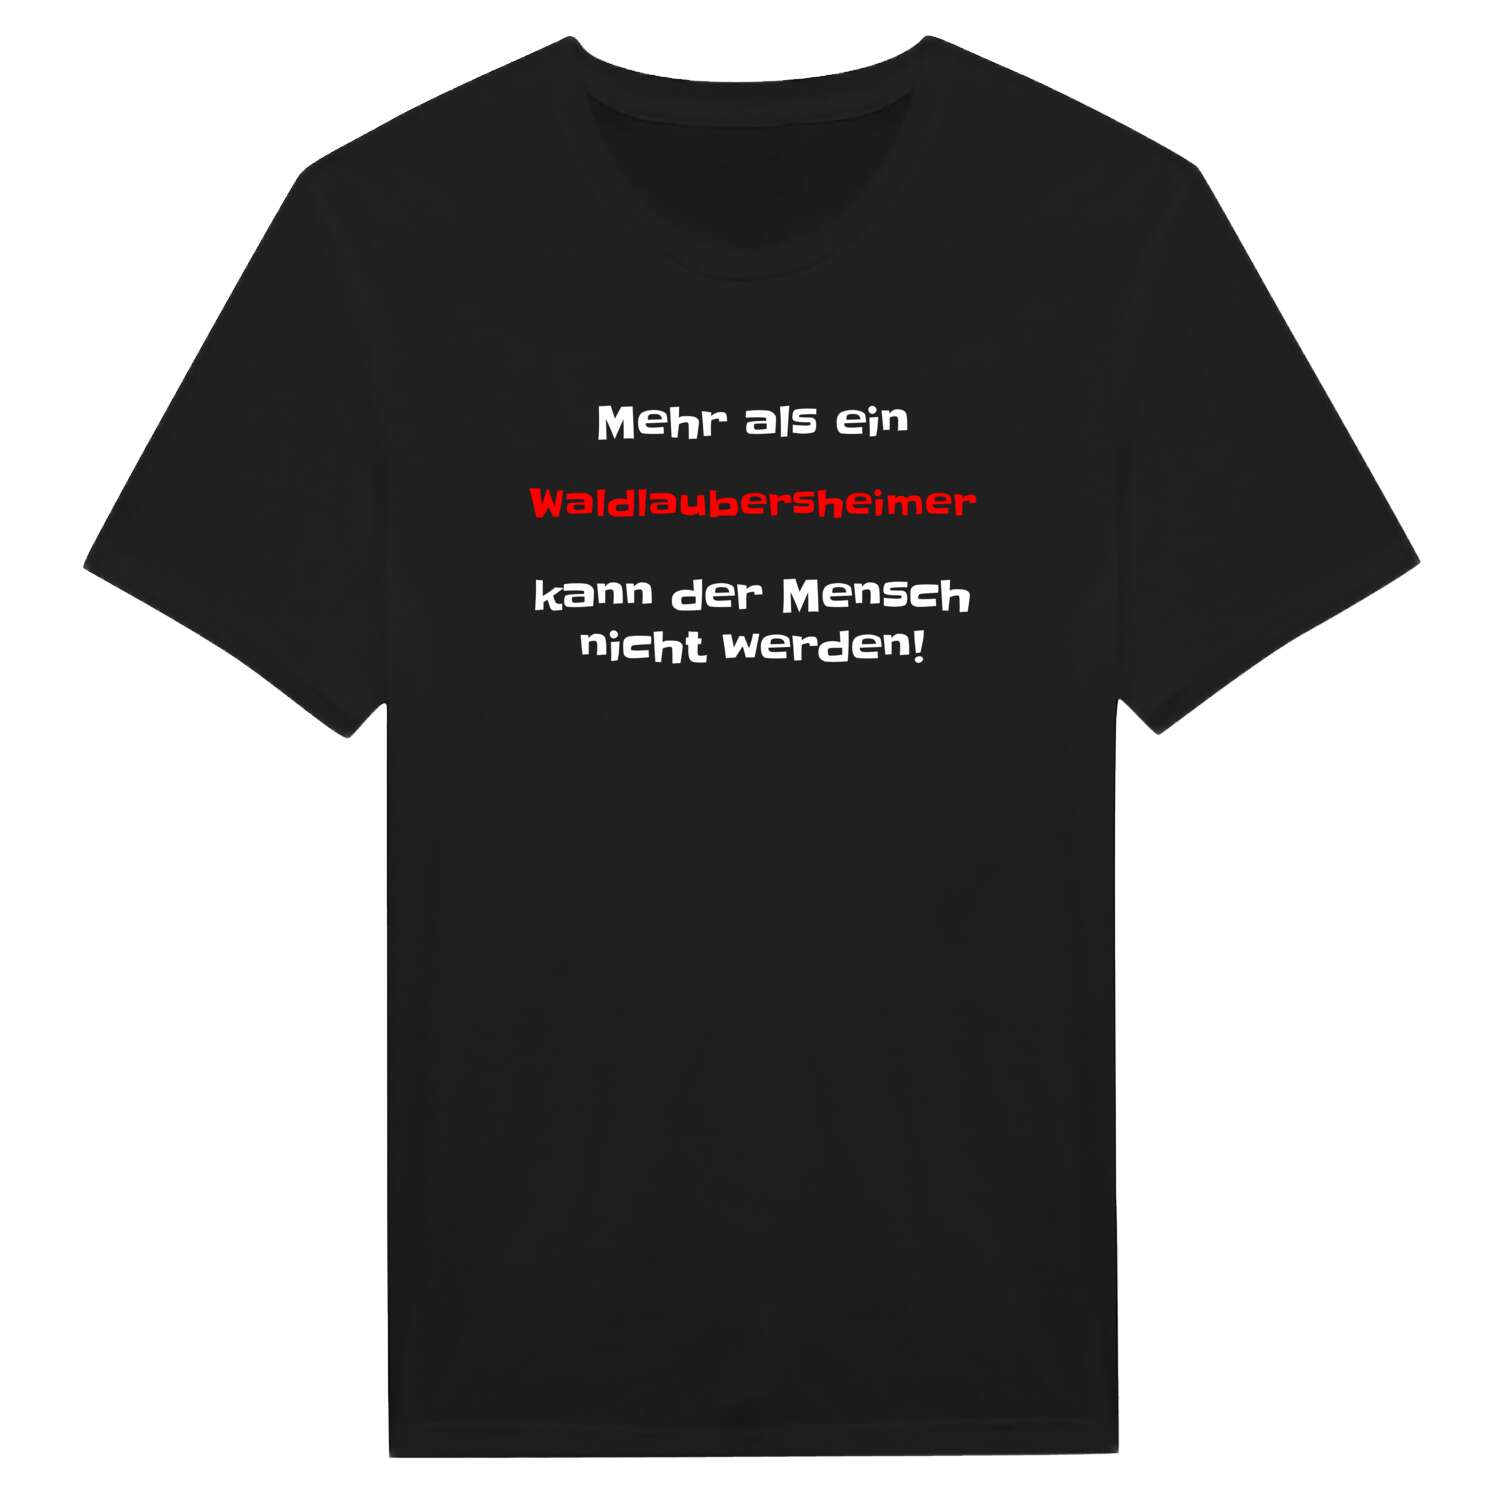 Waldlaubersheim T-Shirt »Mehr als ein«